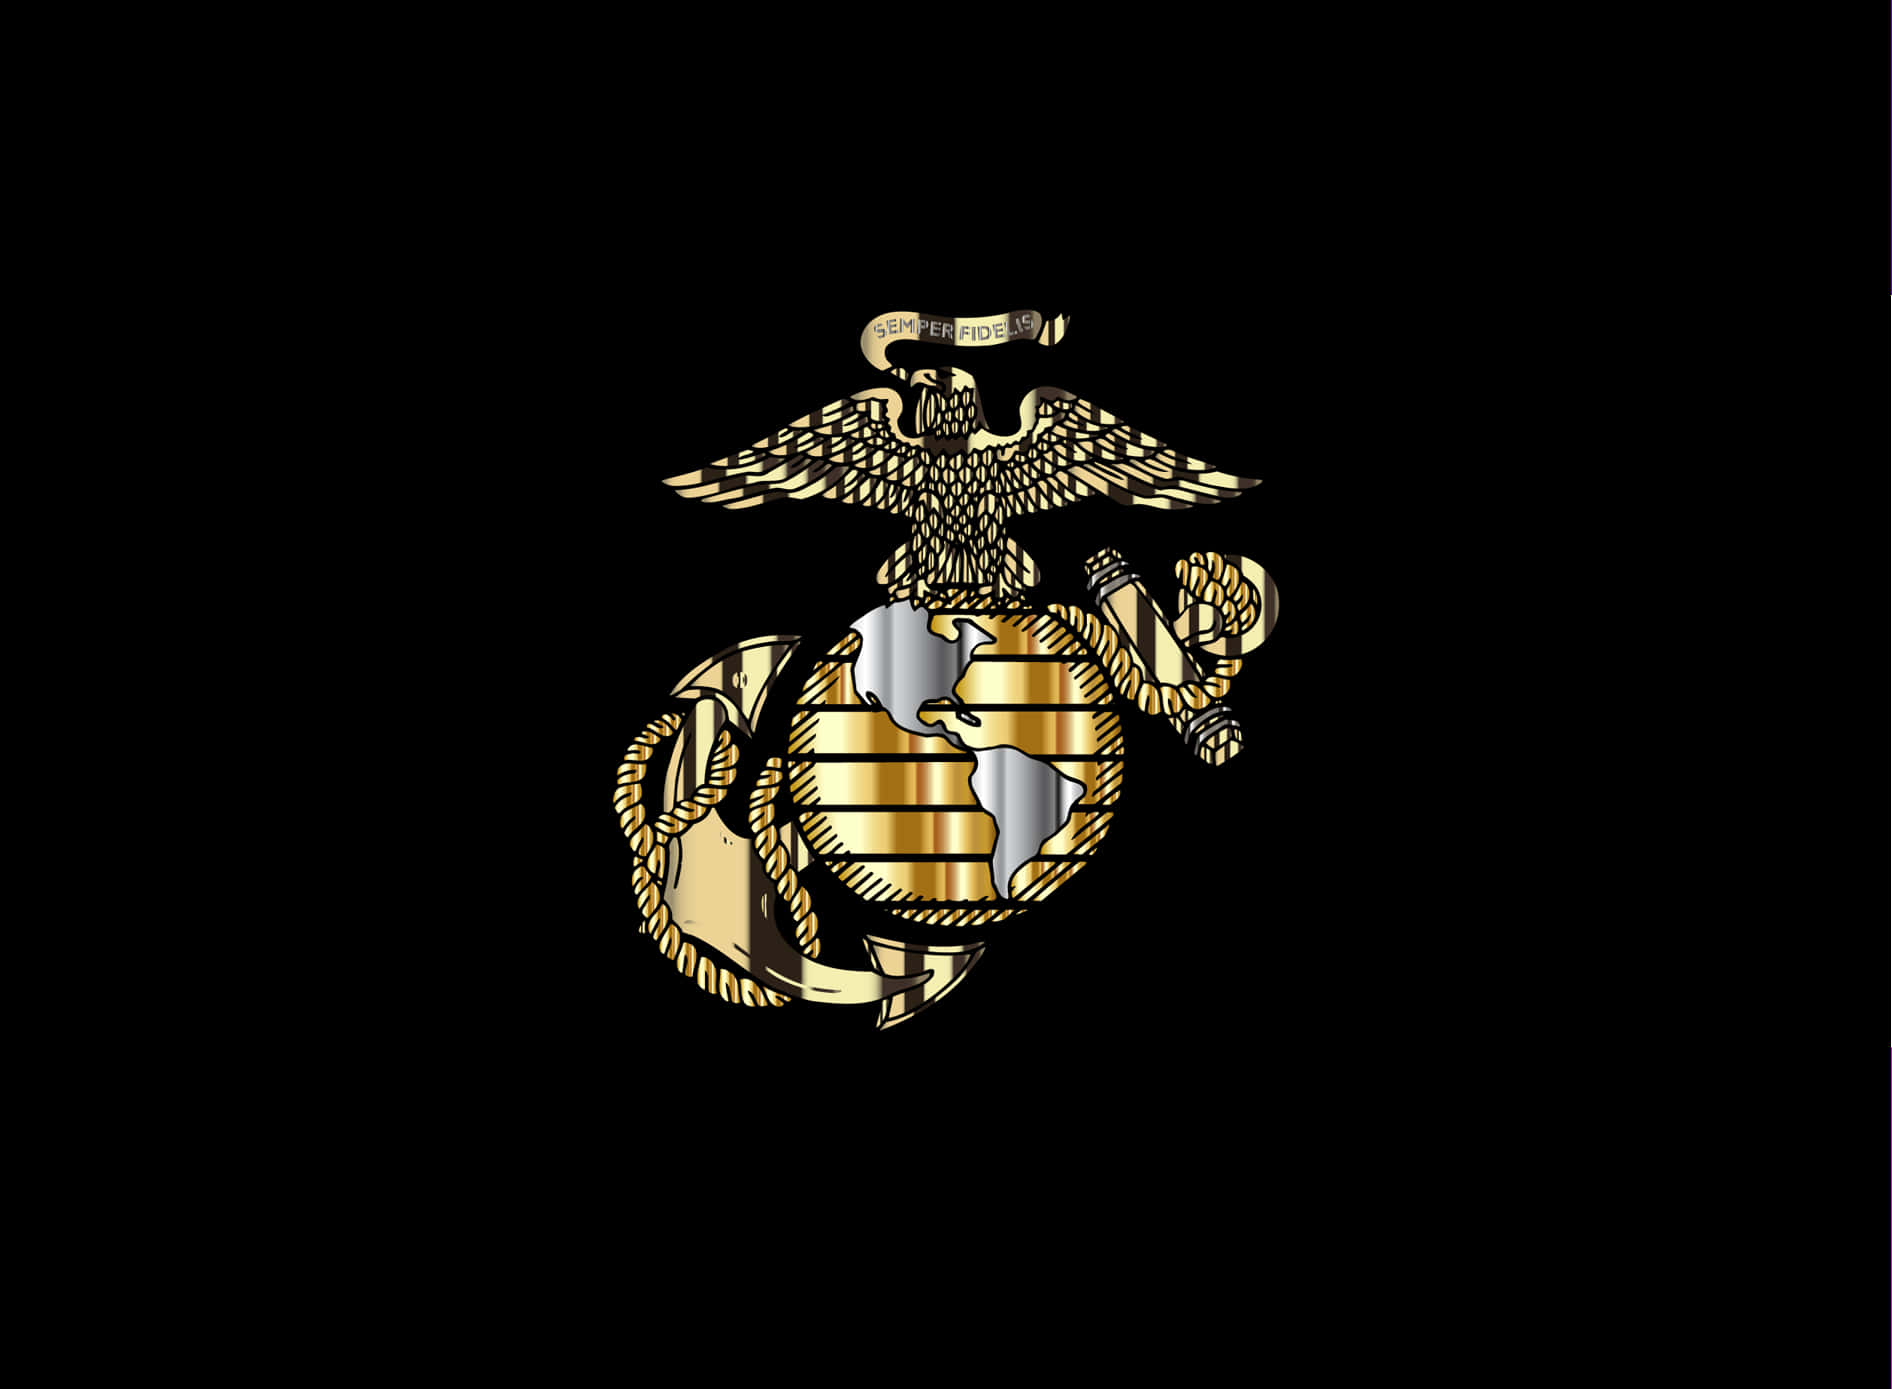 Rindiendohomenaje A Los Valientes Y Valerosos Hombres Y Mujeres Del Cuerpo De Marines De Los Estados Unidos. Fondo de pantalla